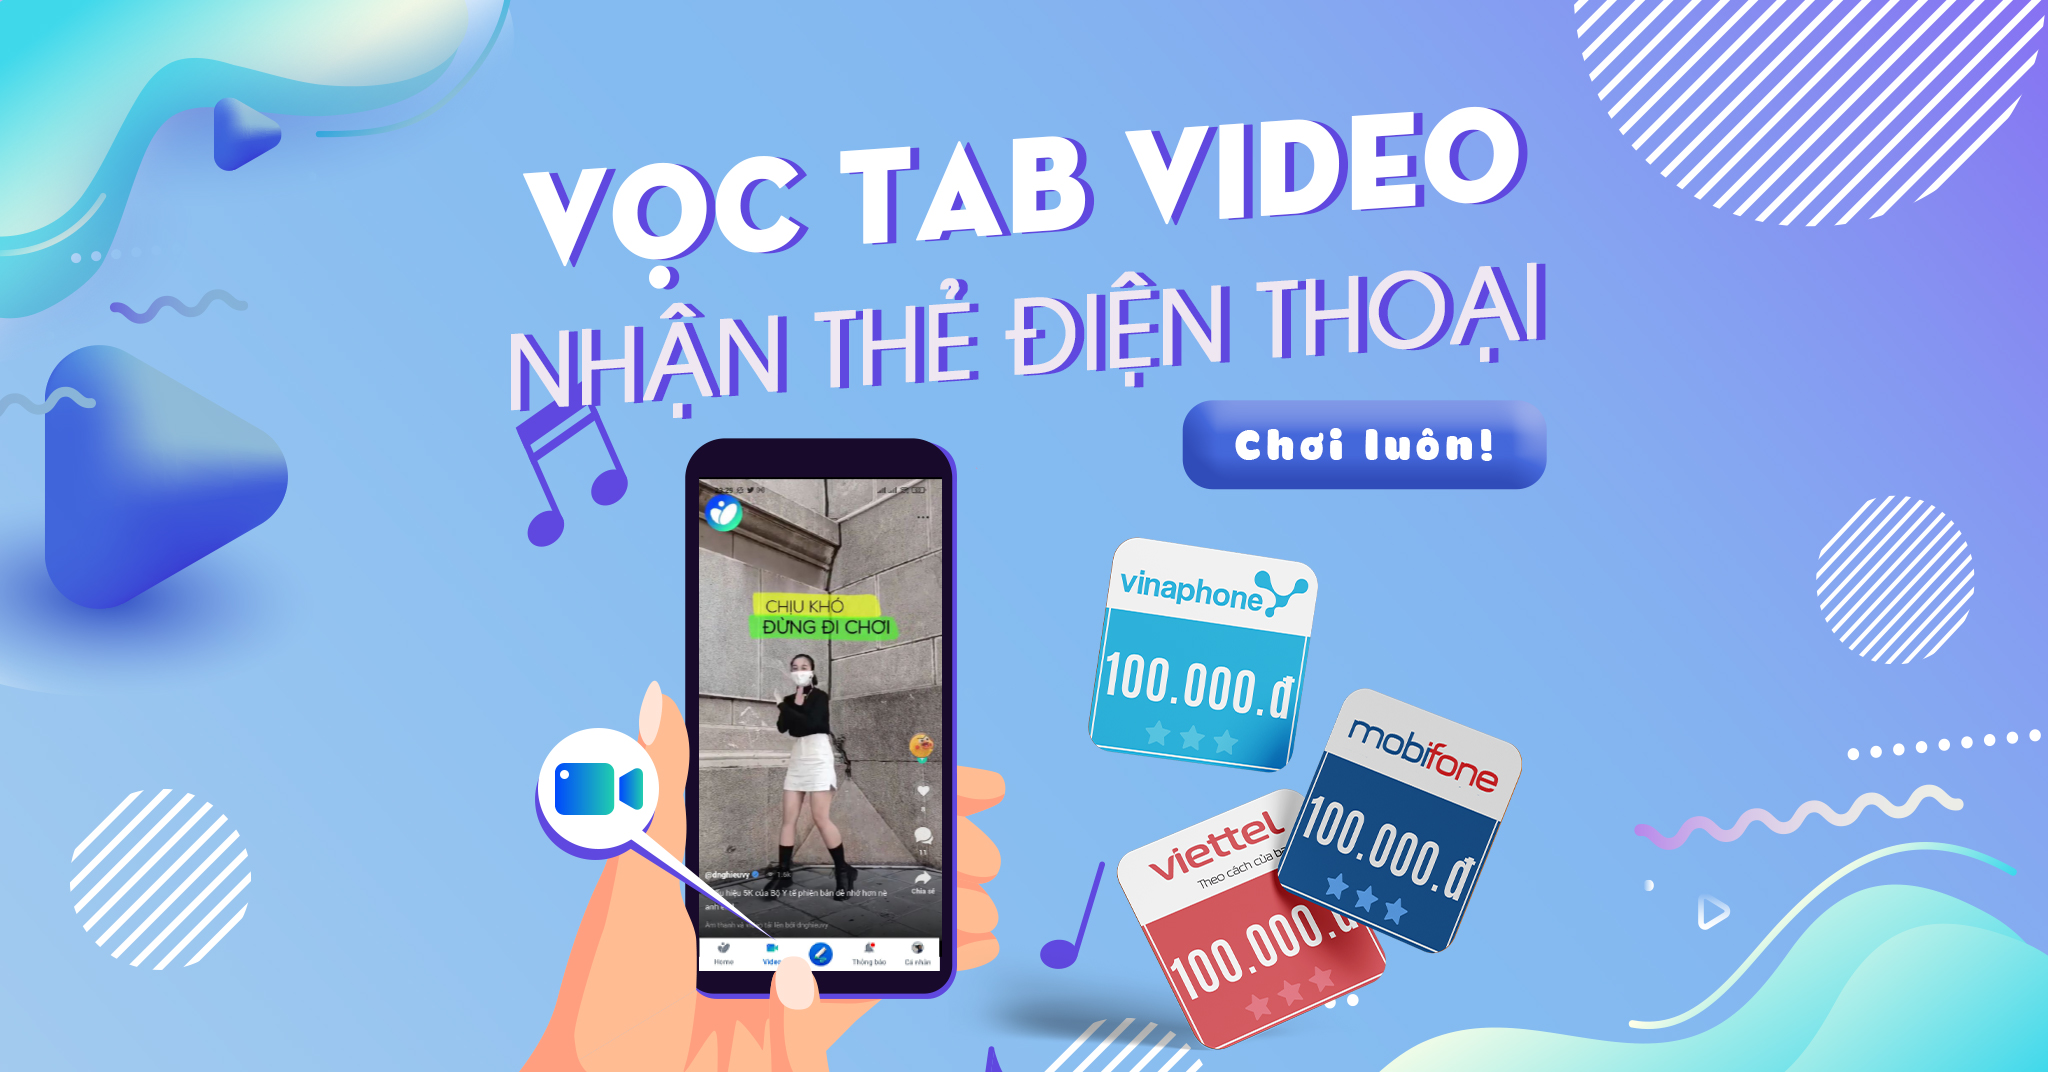 Rủ anh em lướt tab Video trên app Tinhte, nhận thẻ điện thoại mỗi ngày!